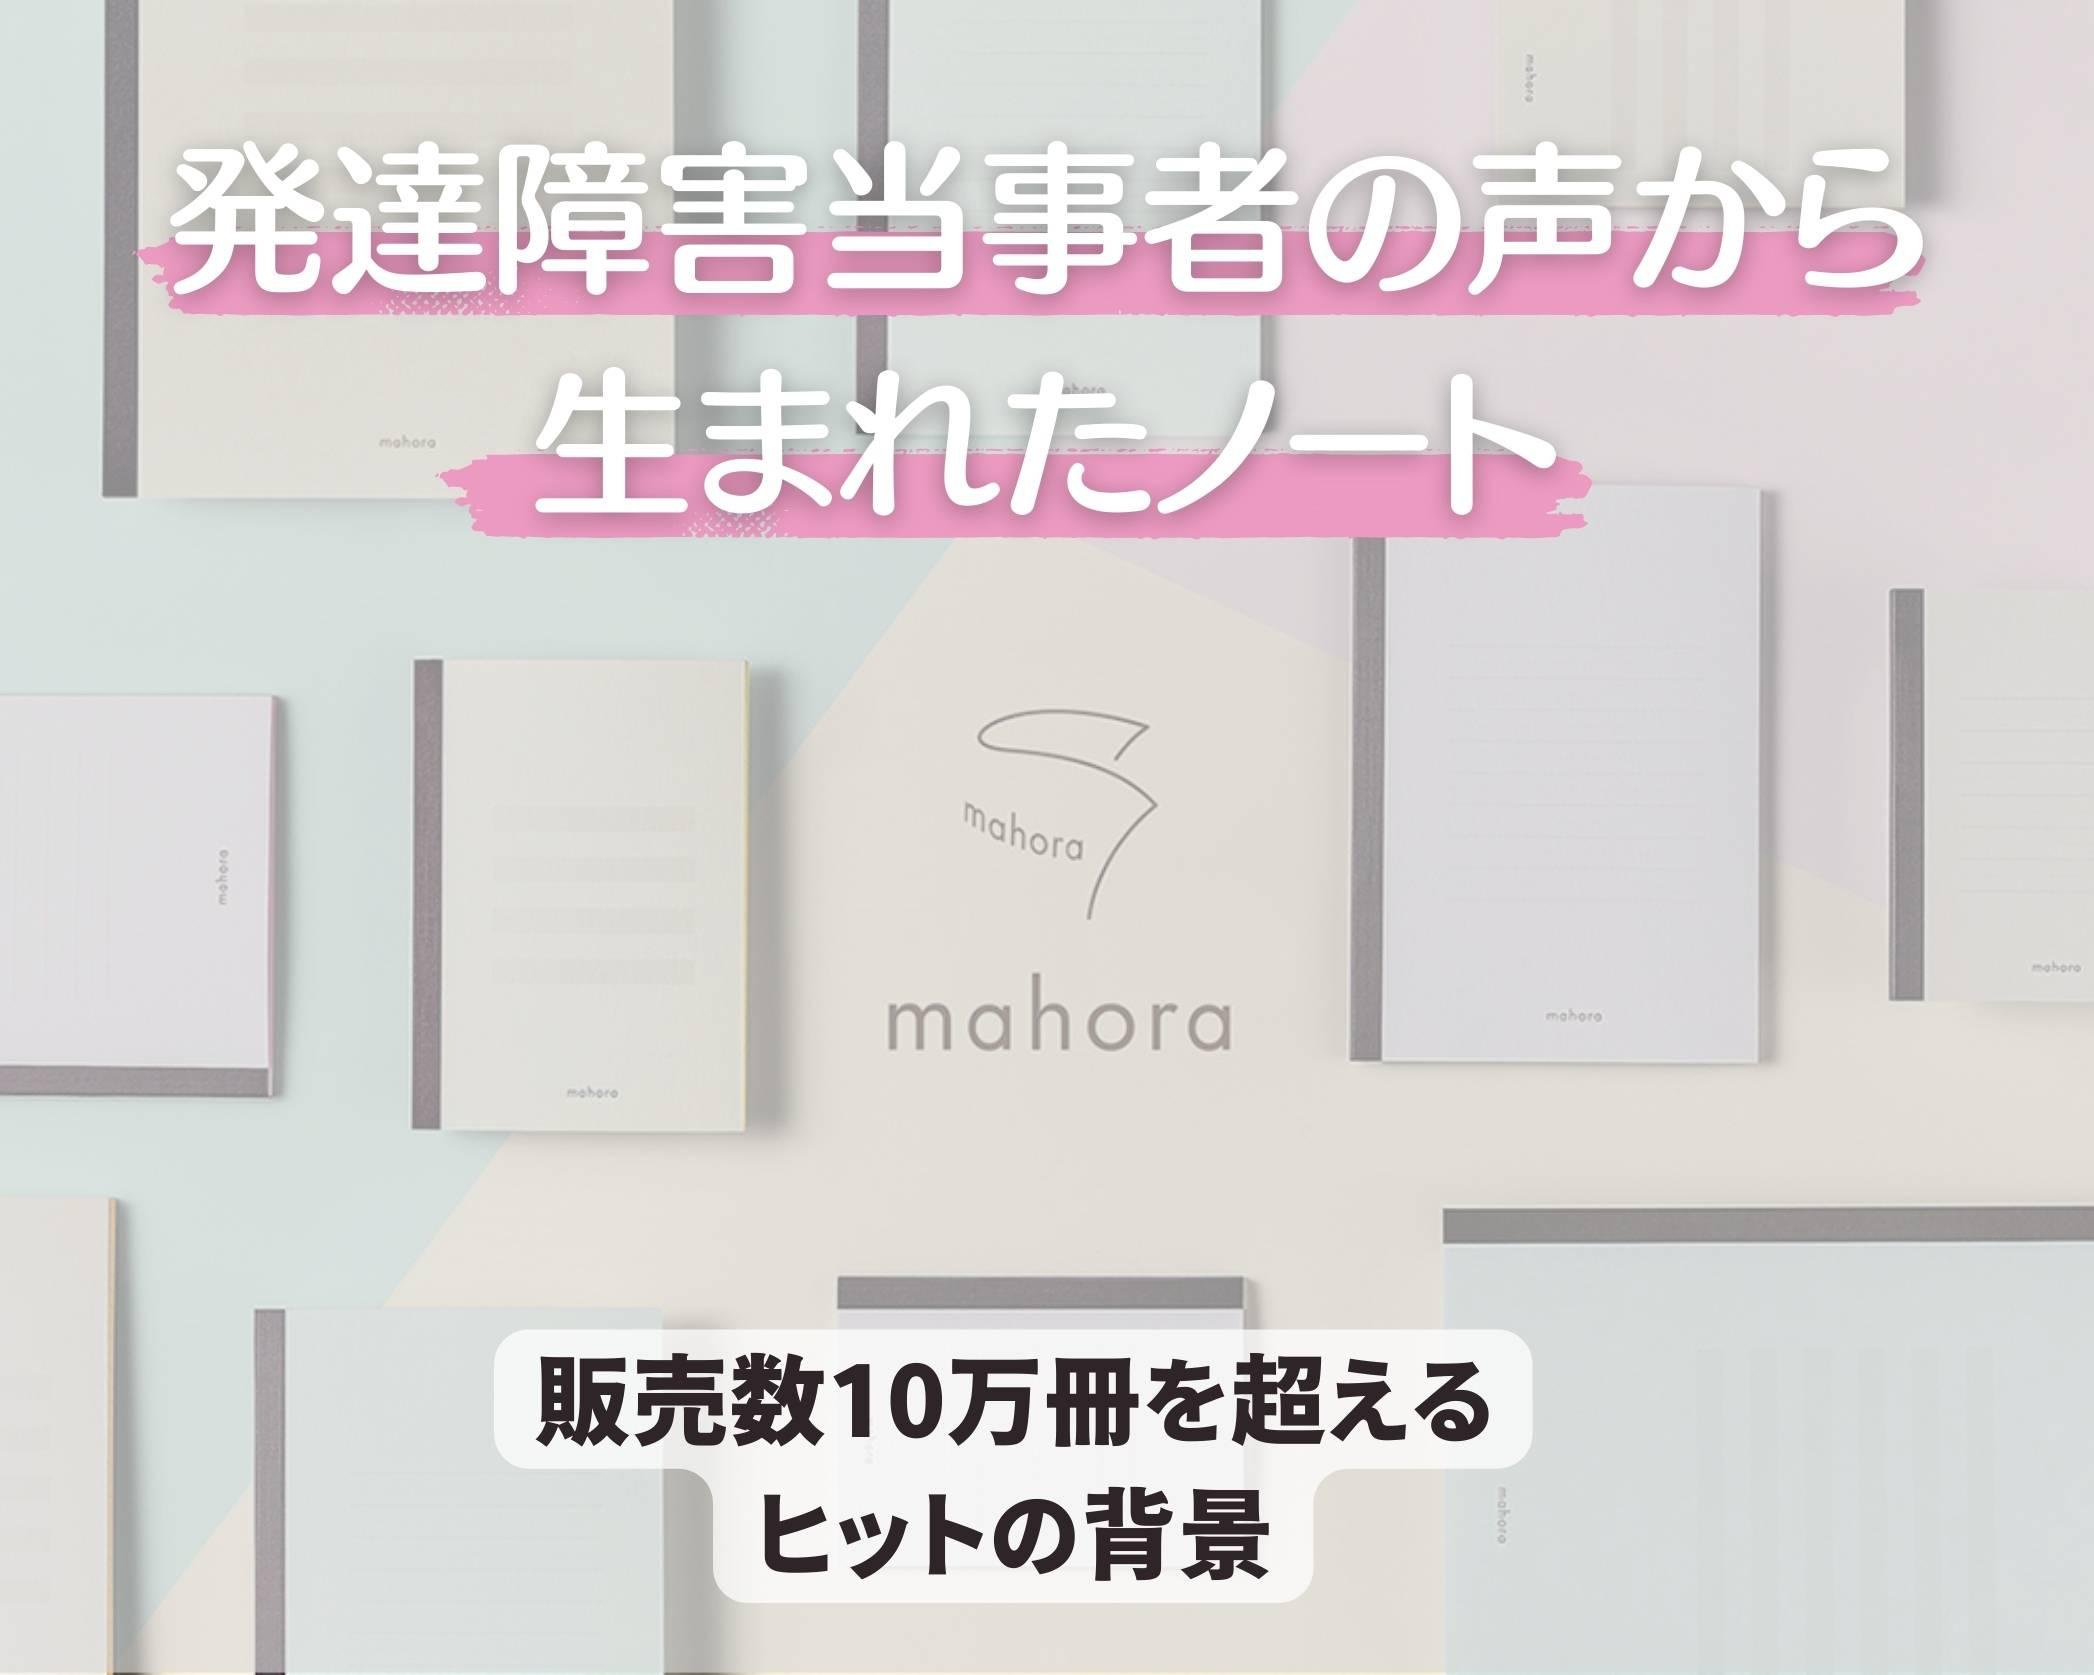 累計販売数10万冊突破。発達障害を持つ人の声から生まれたノート「mahora」が目指す未来とは